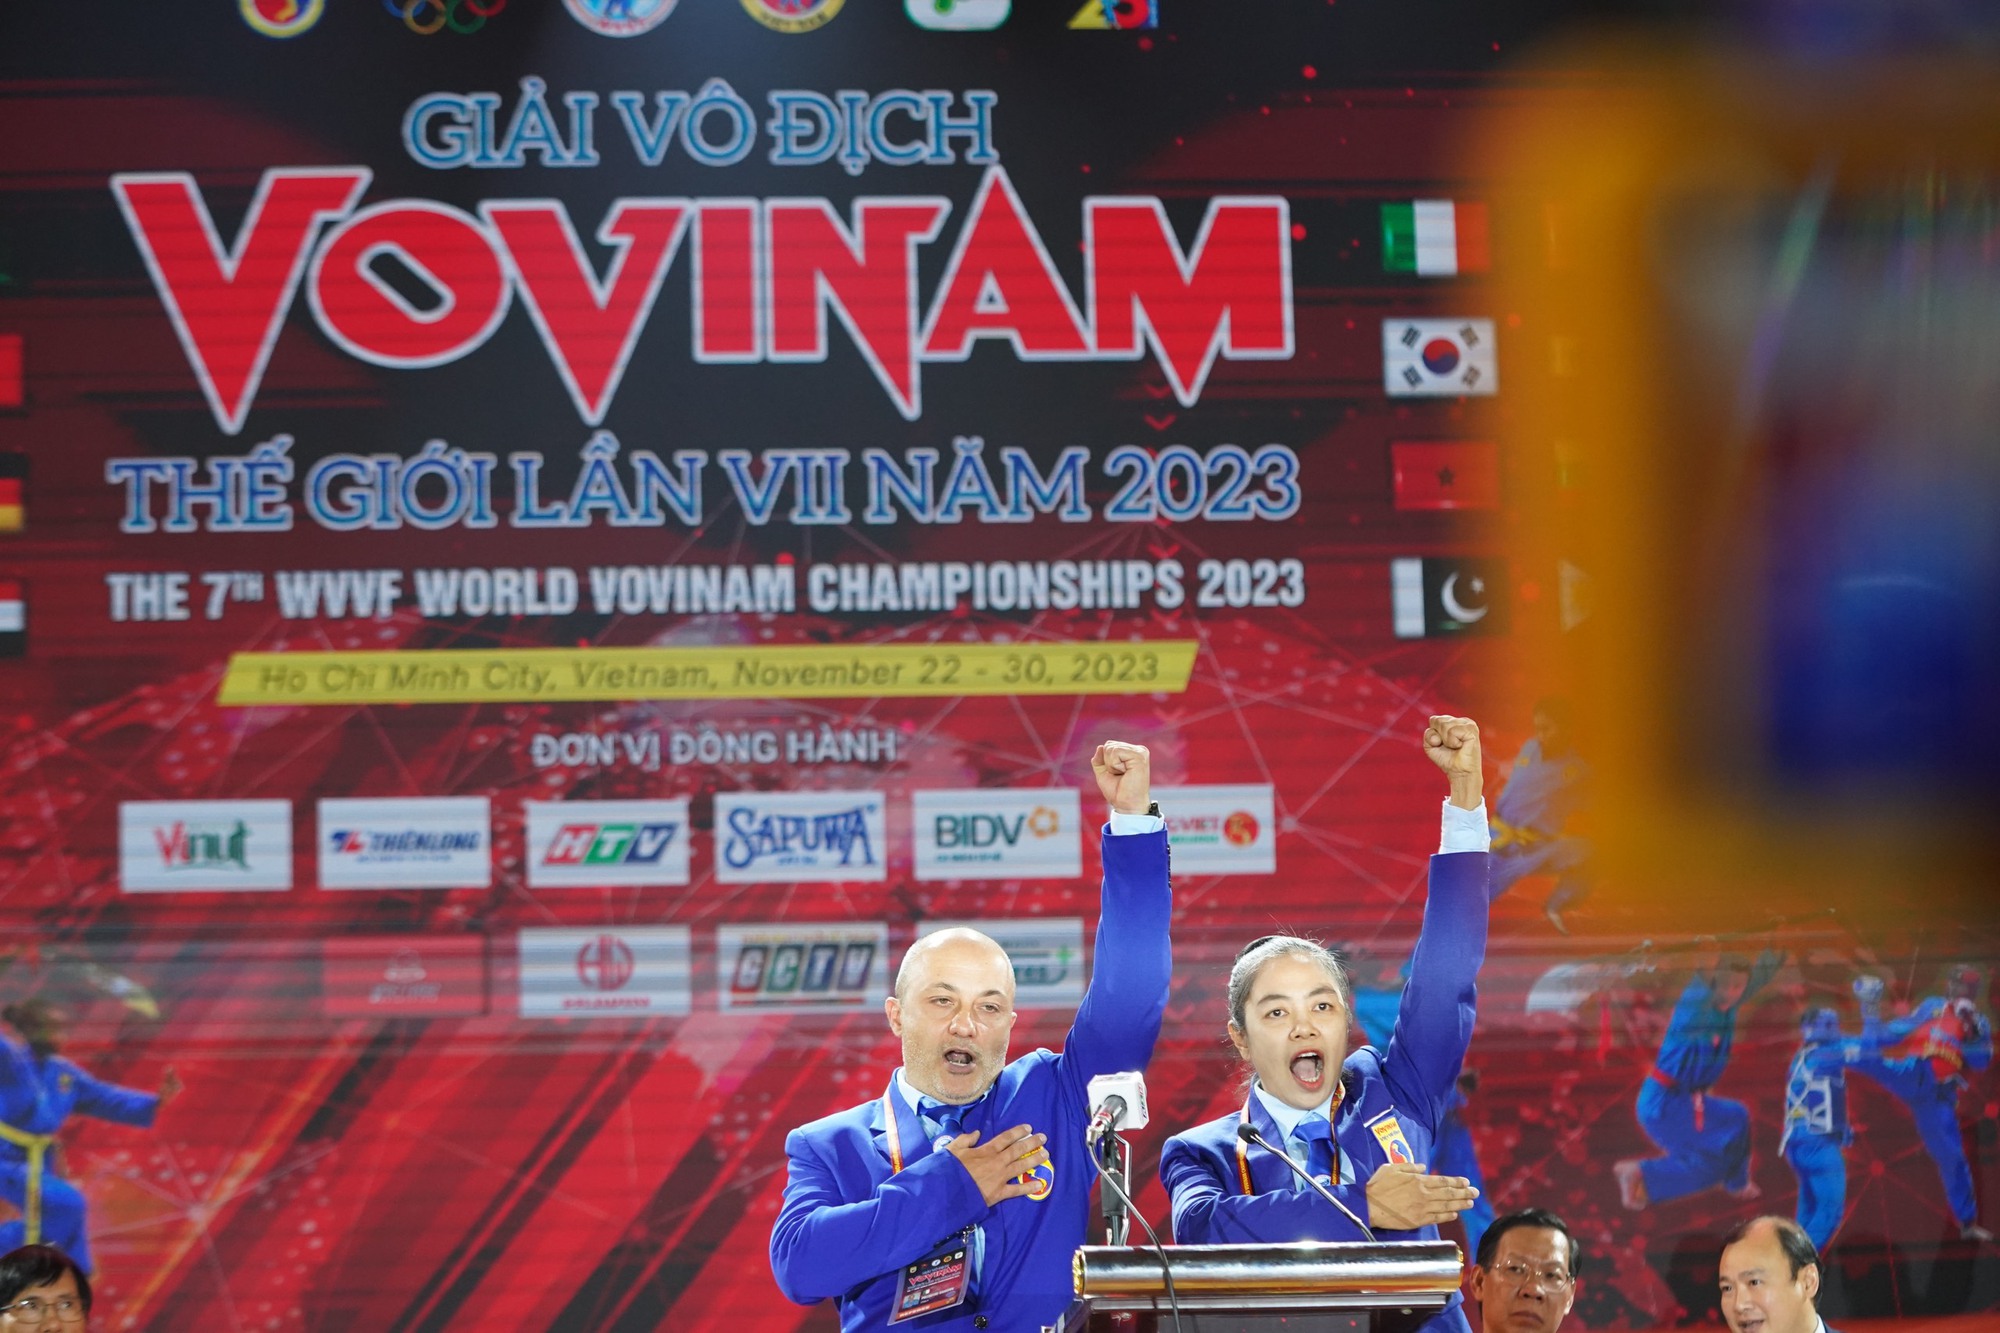 Giải vô địch vovinam thế giới 2023 chính thức khởi tranh tại Việt Nam - Ảnh 5.